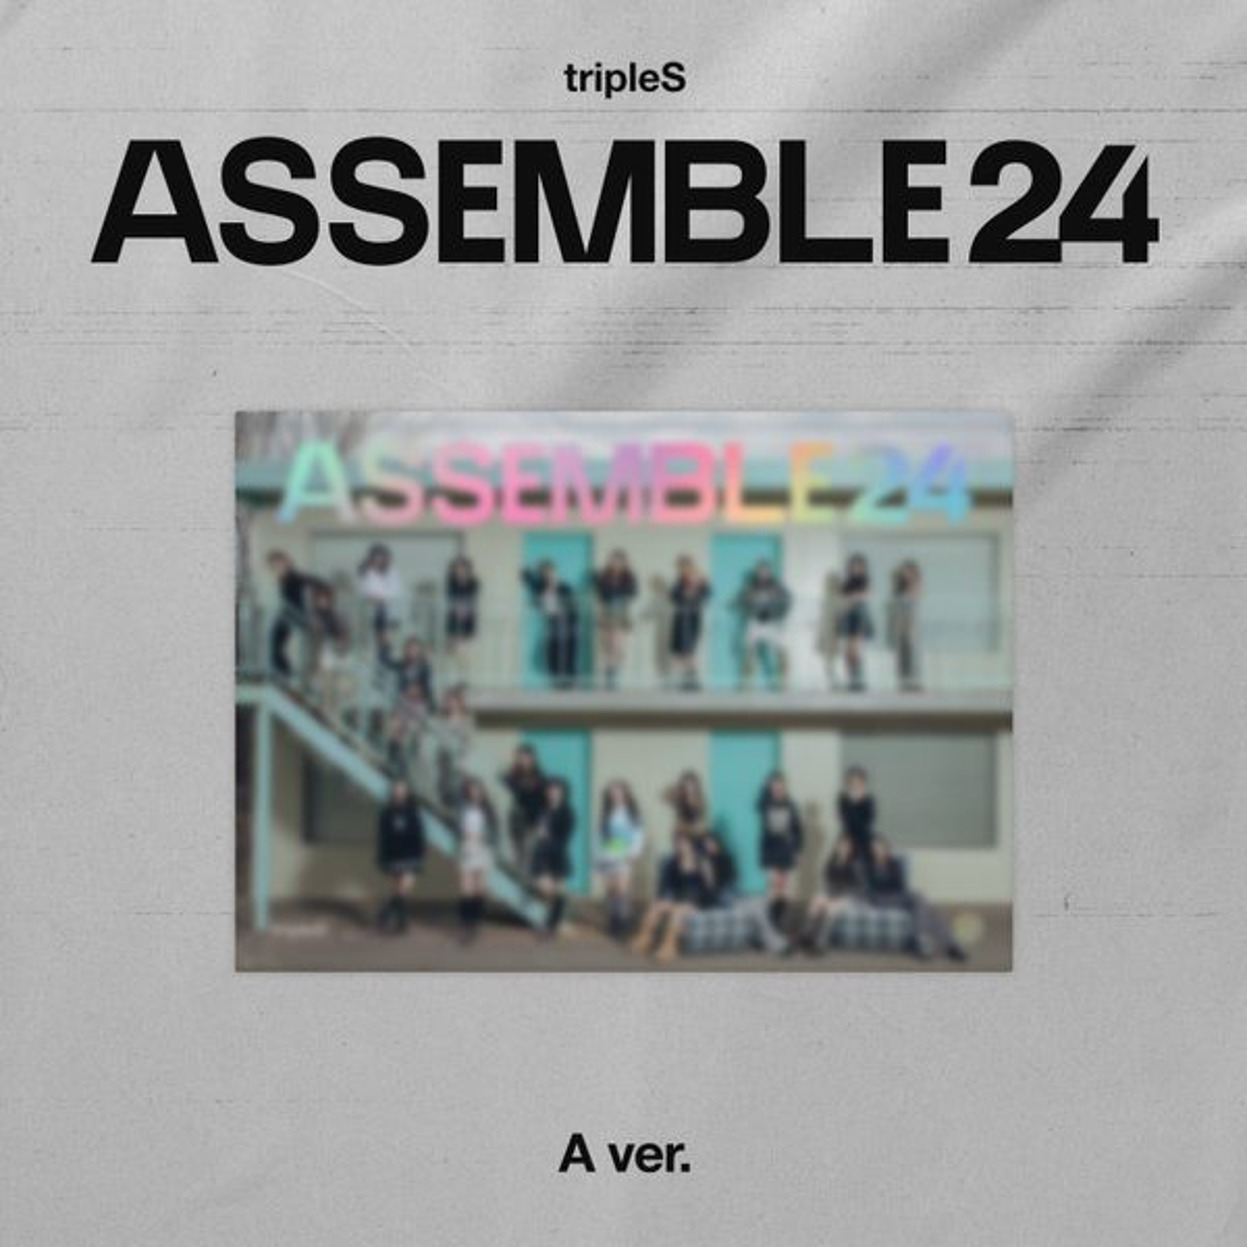 트리플에스 (tripleS) - 정규앨범 1집 [ASSEMBLE24] A Ver.